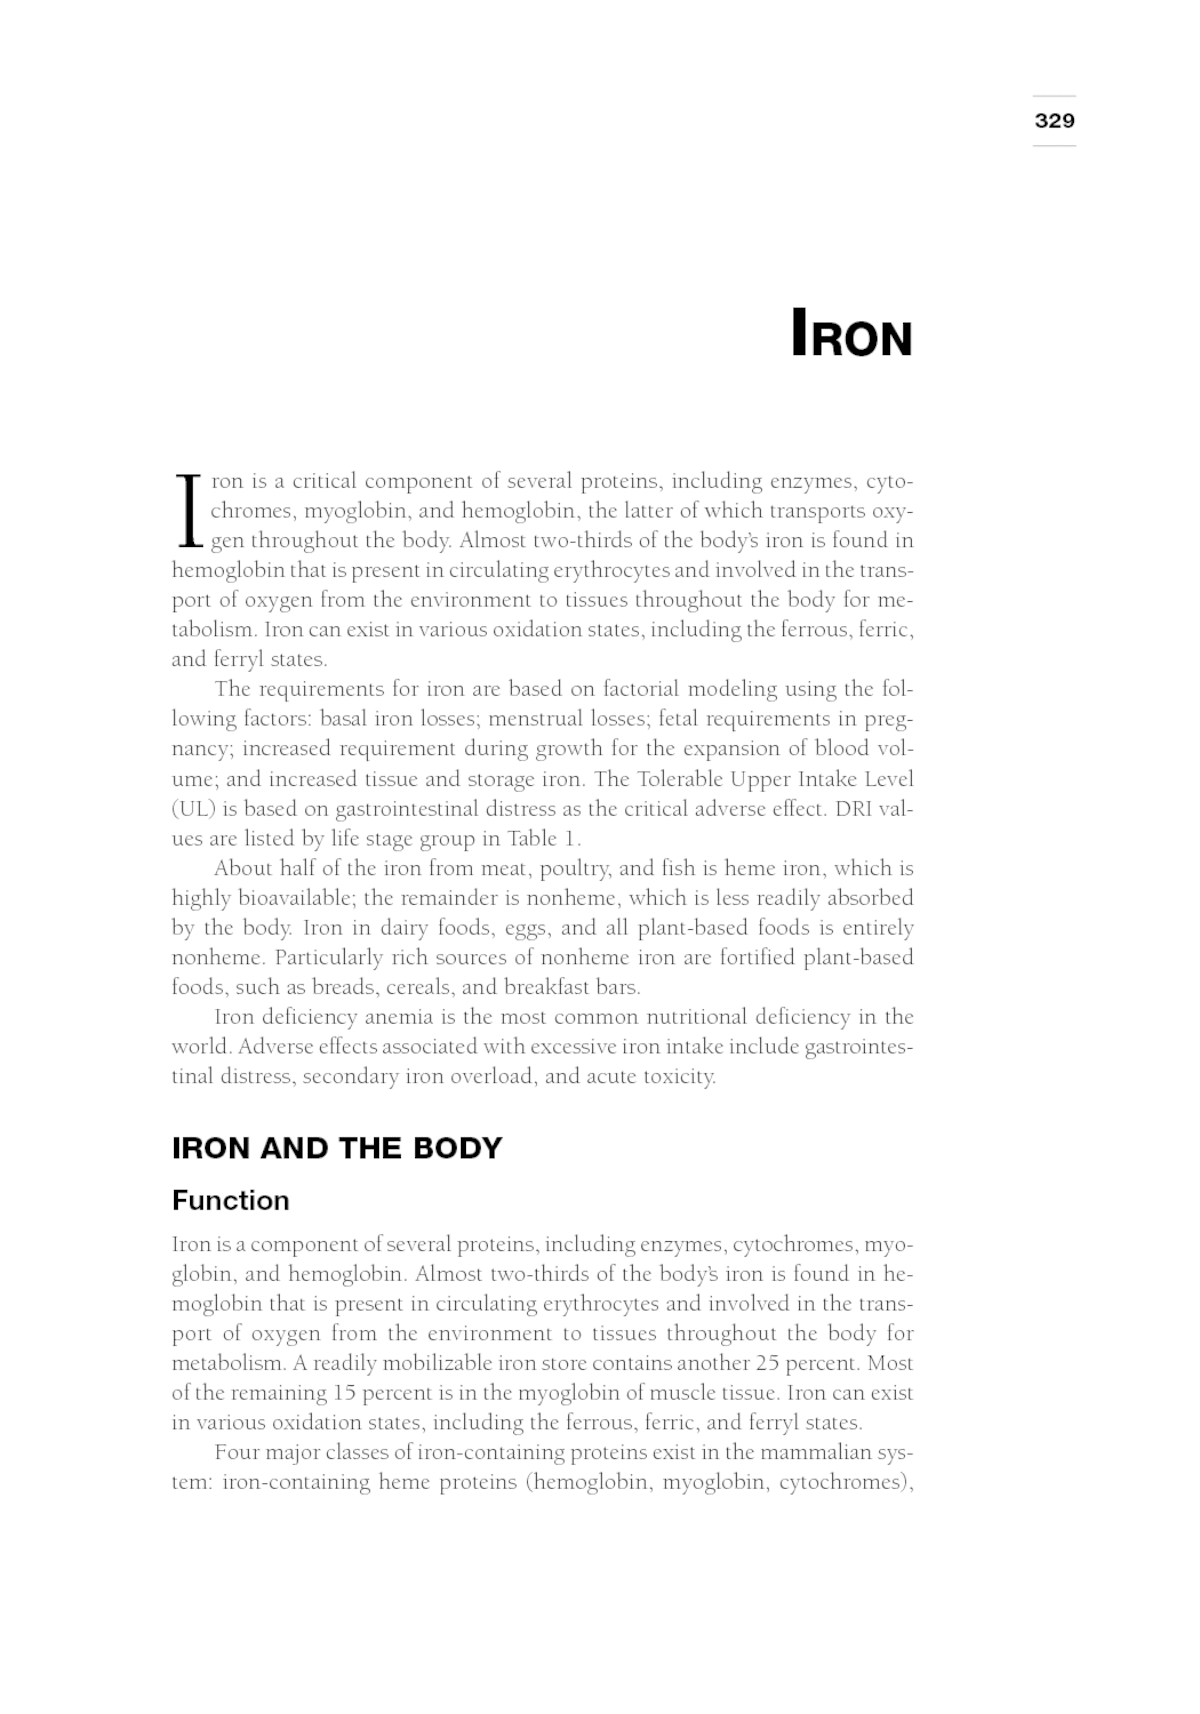 essay on iron